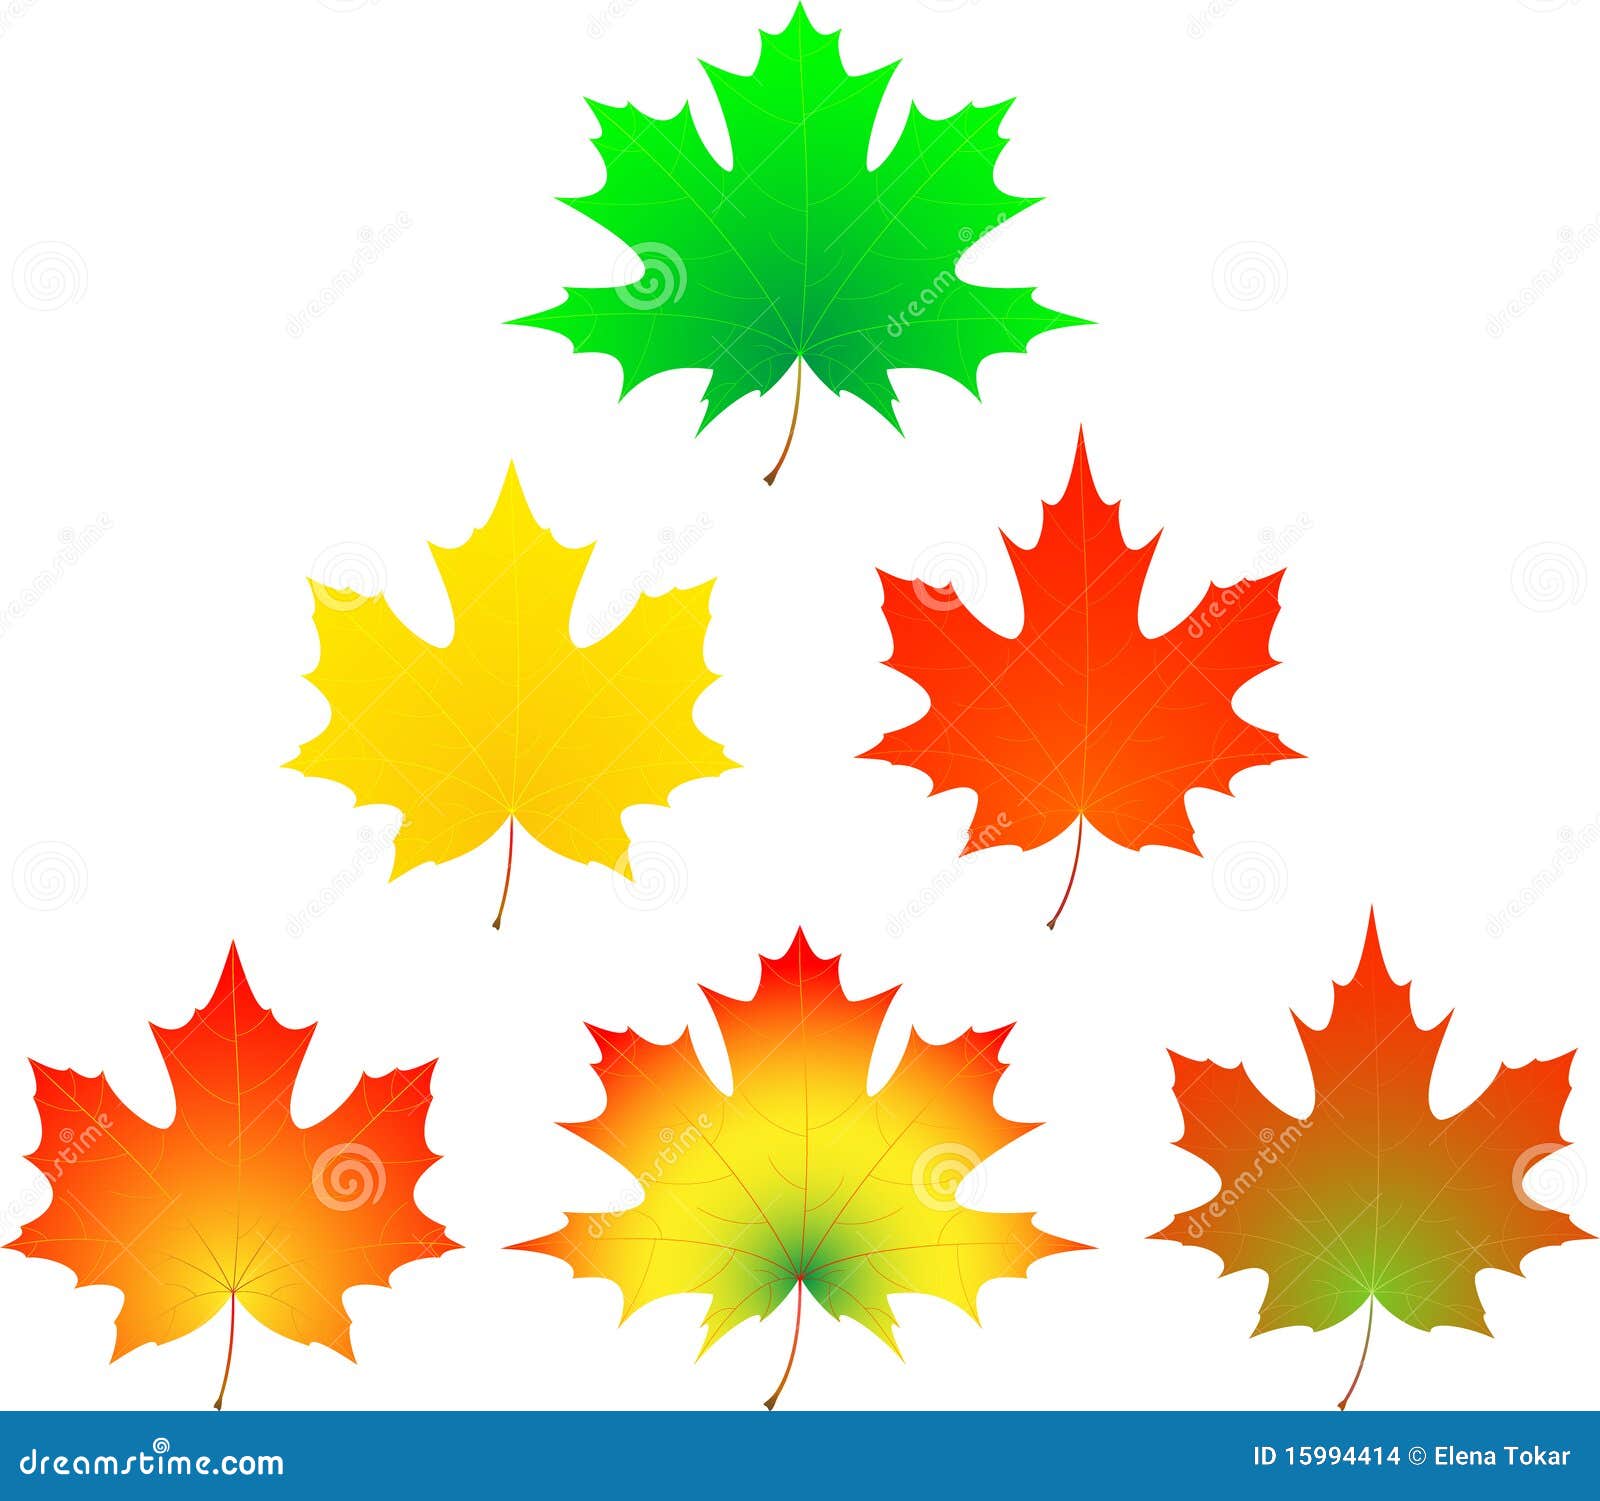 Разноцветные кленовые листья разных размеров